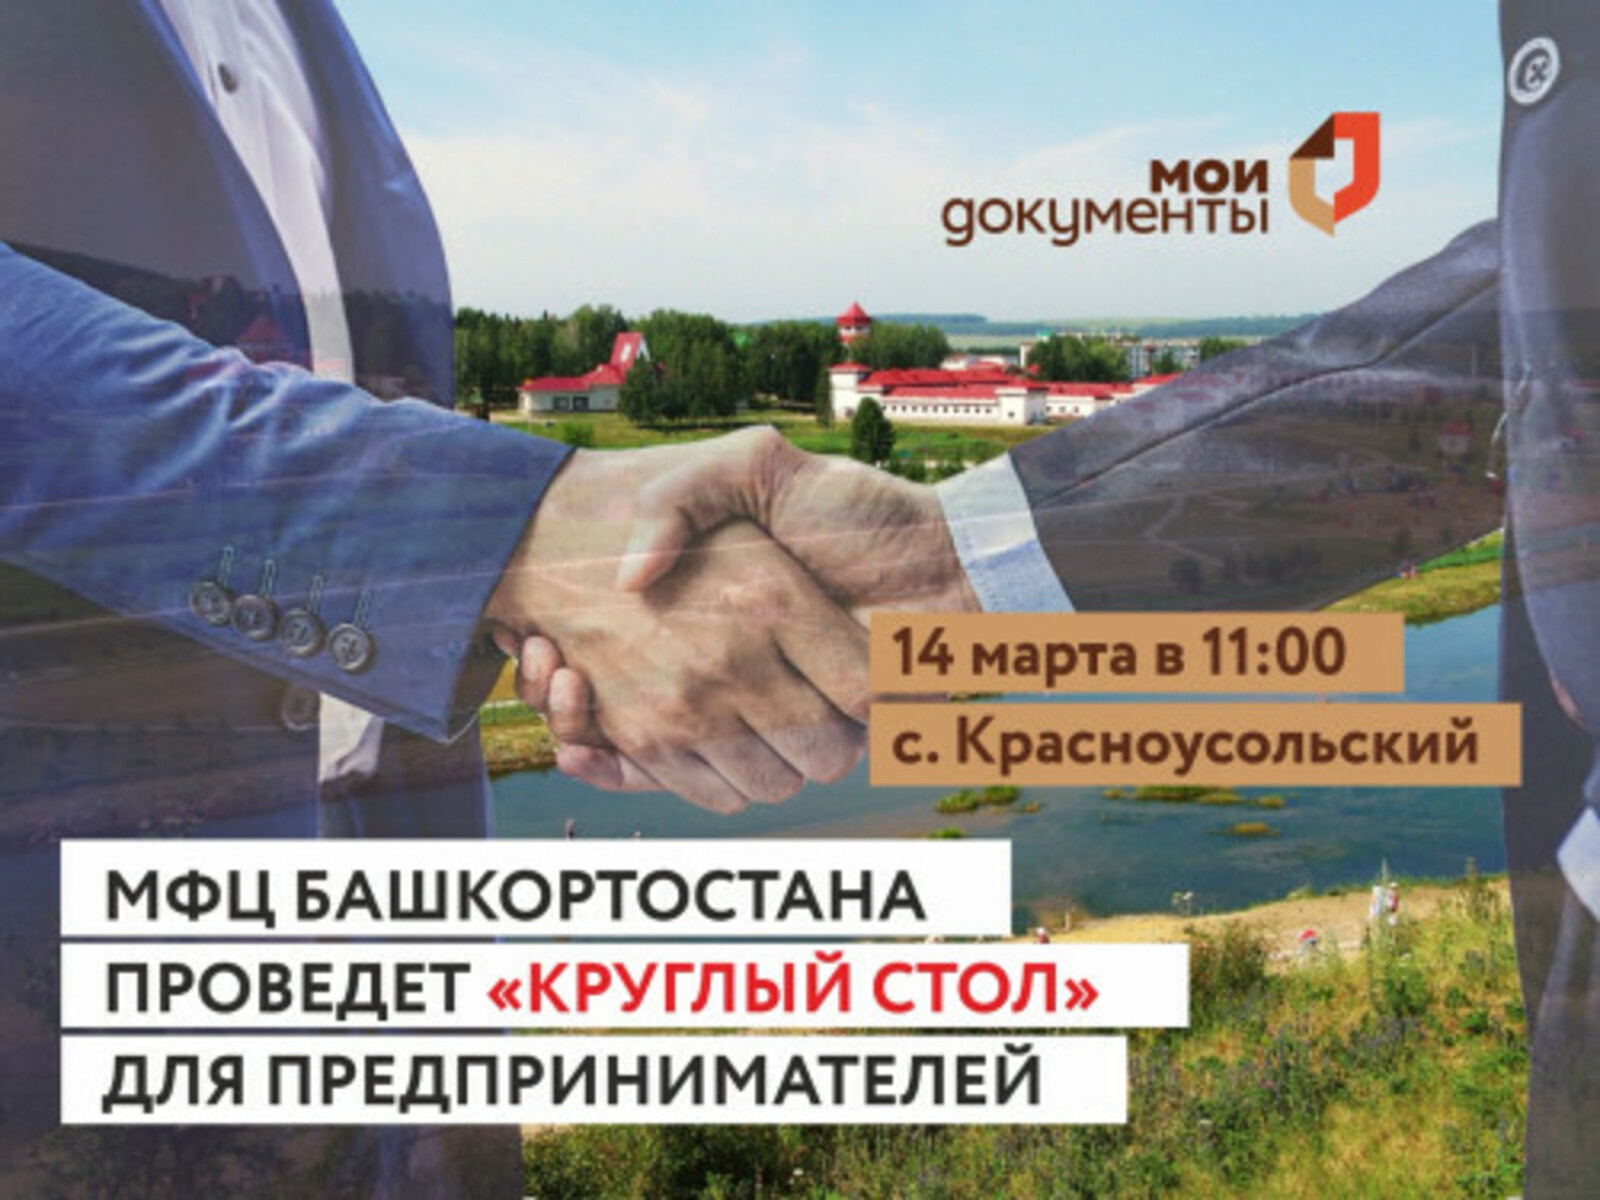 МФЦ Башкортостана проведет «круглый стол» для предпринимателей в селе Красноусольский